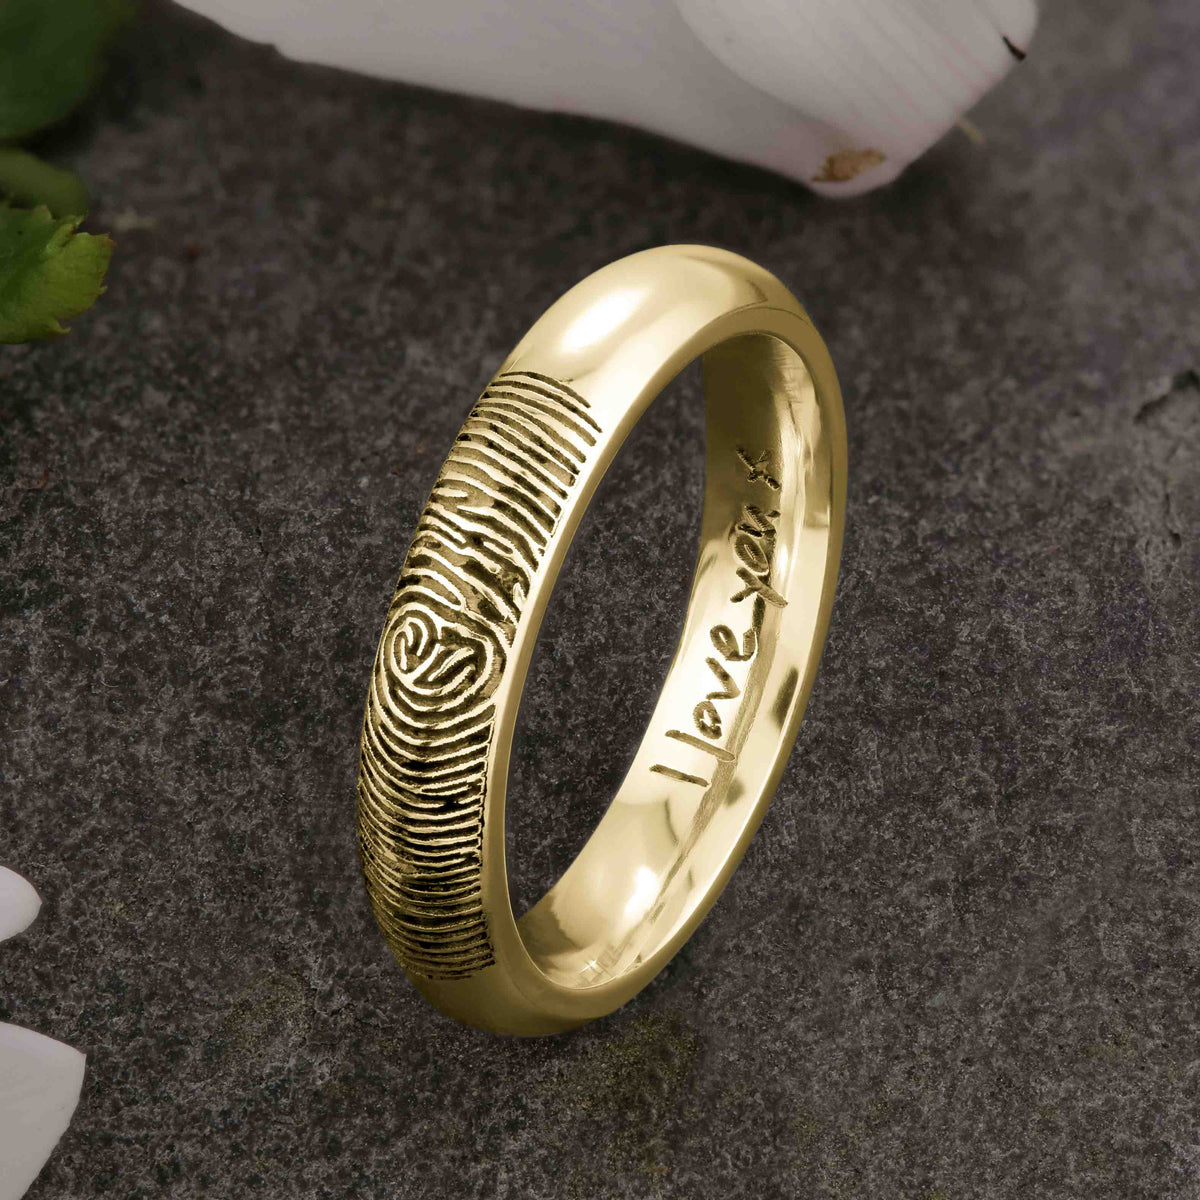 Fingerprint Ring Gold - 9k – Chris Parry Handmade Jewellery